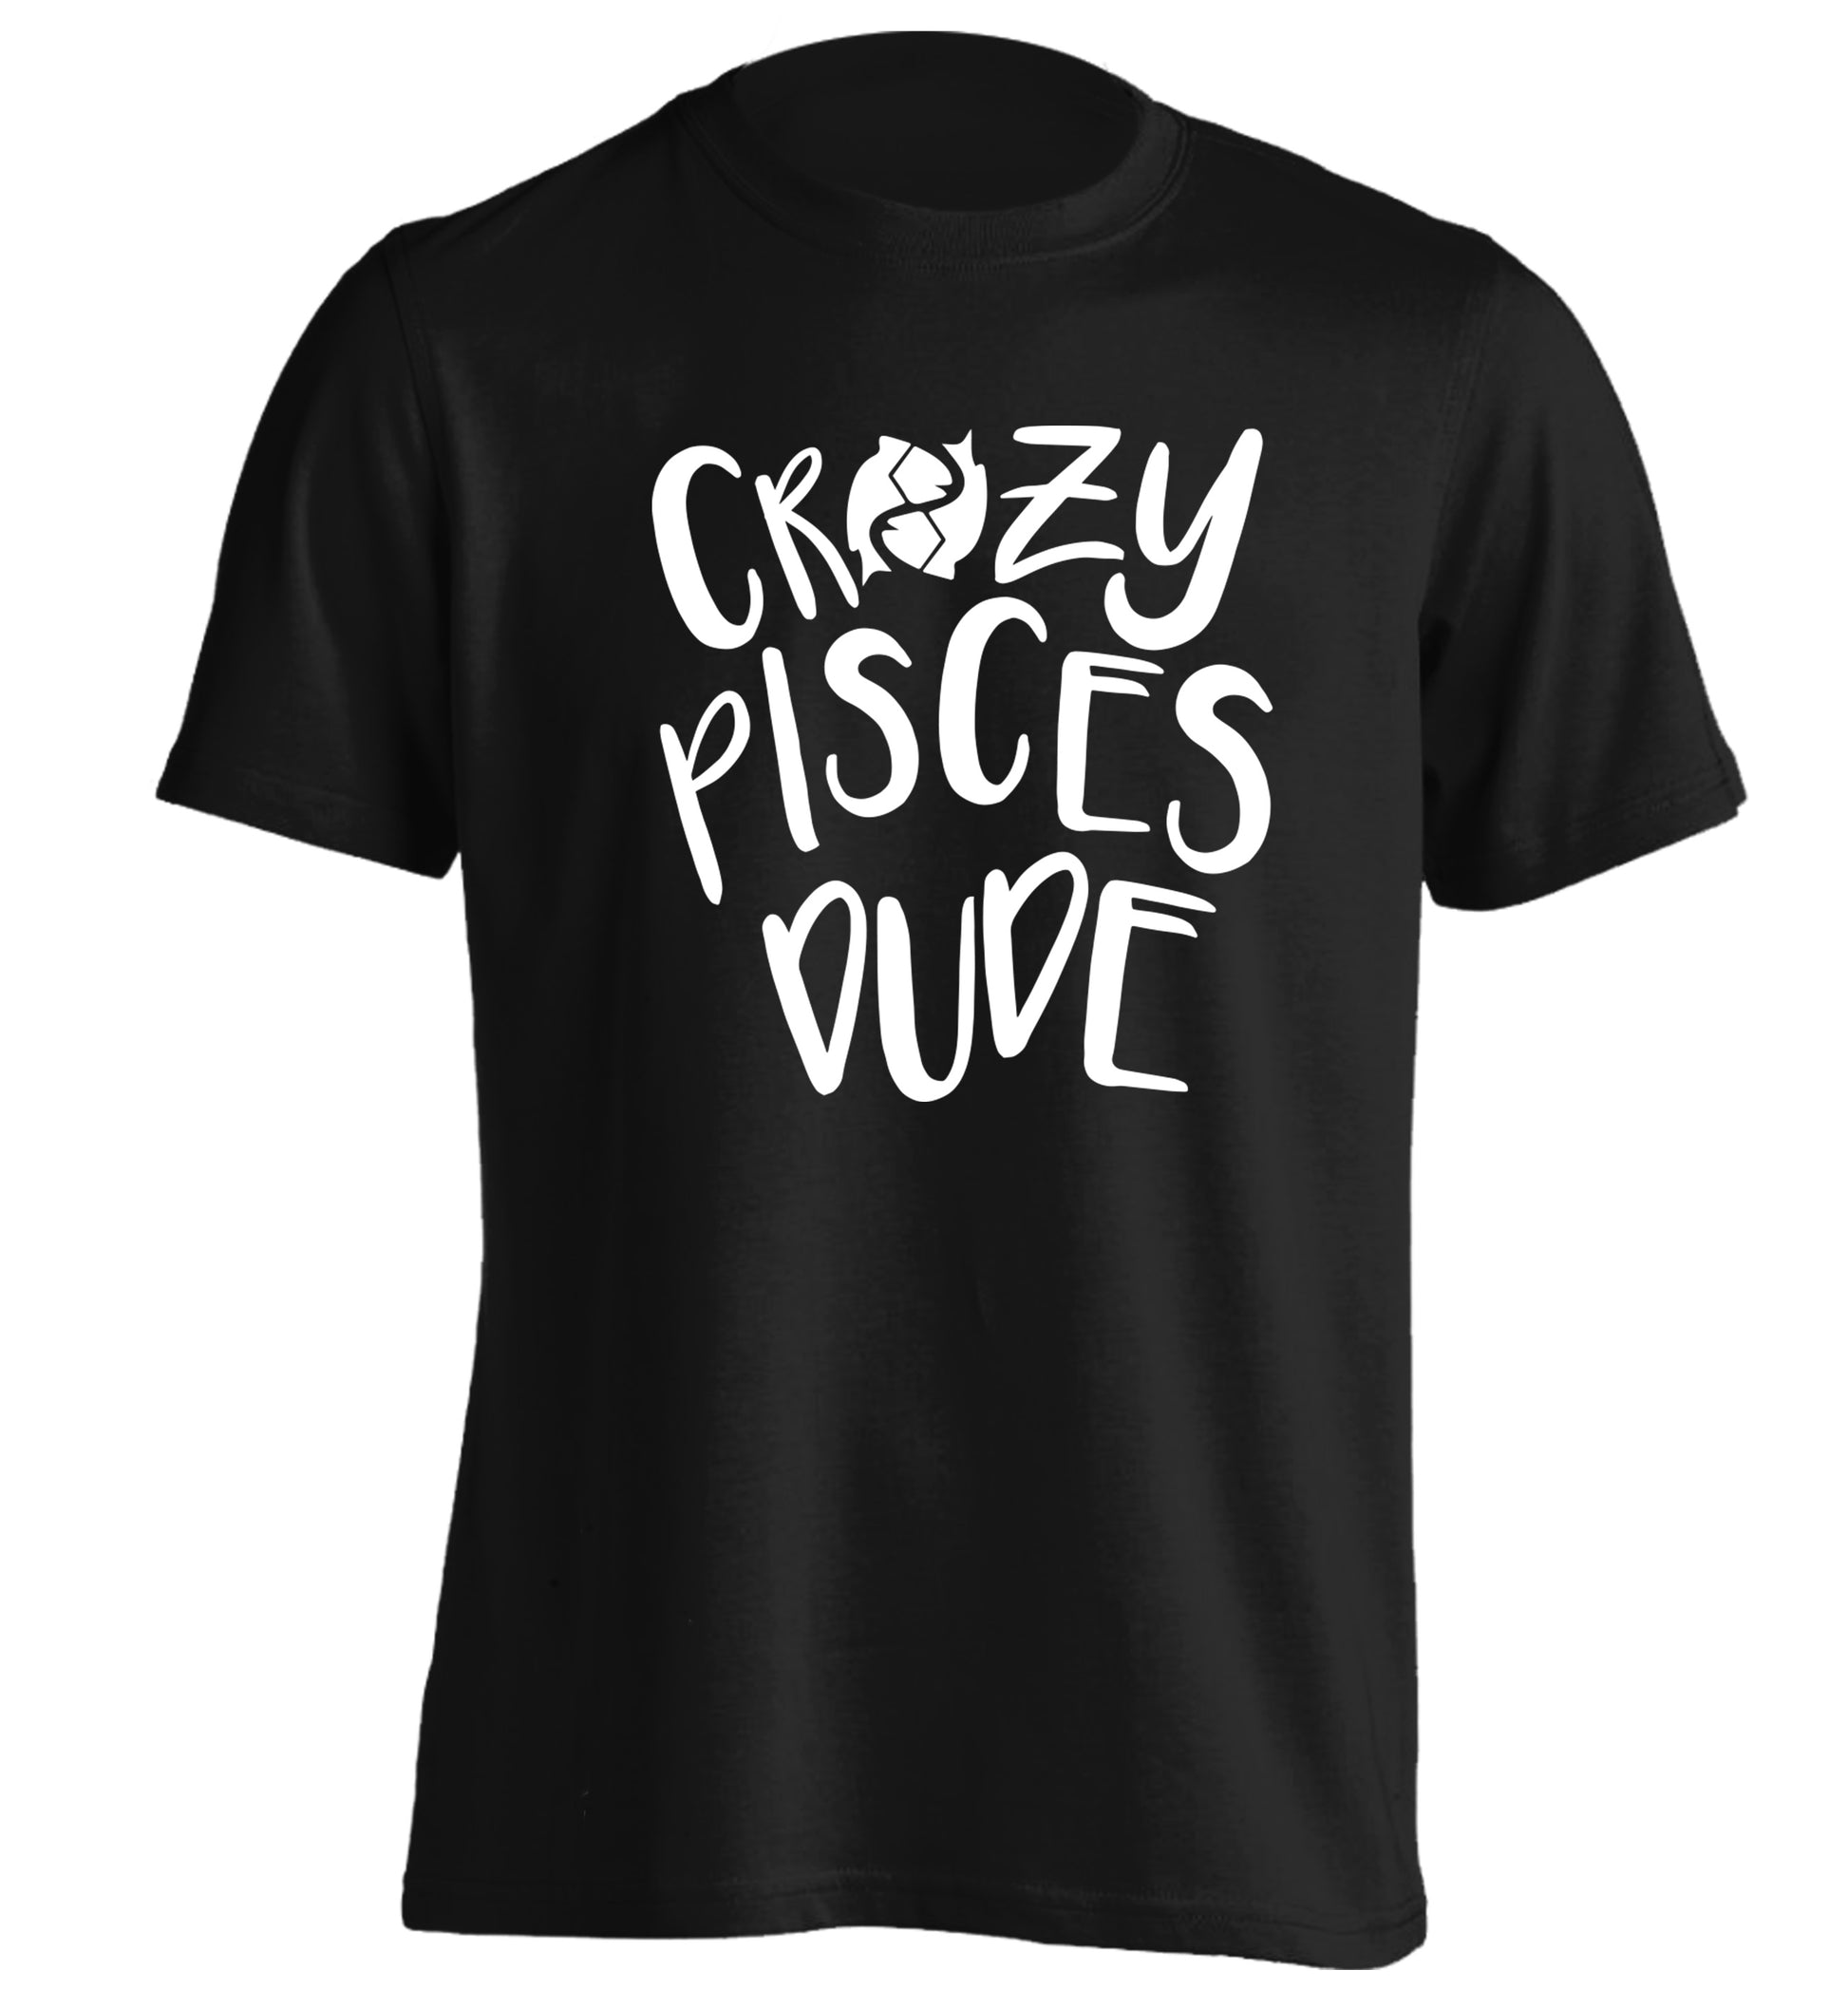 Crazy pisces dude adults unisex black Tshirt 2XL